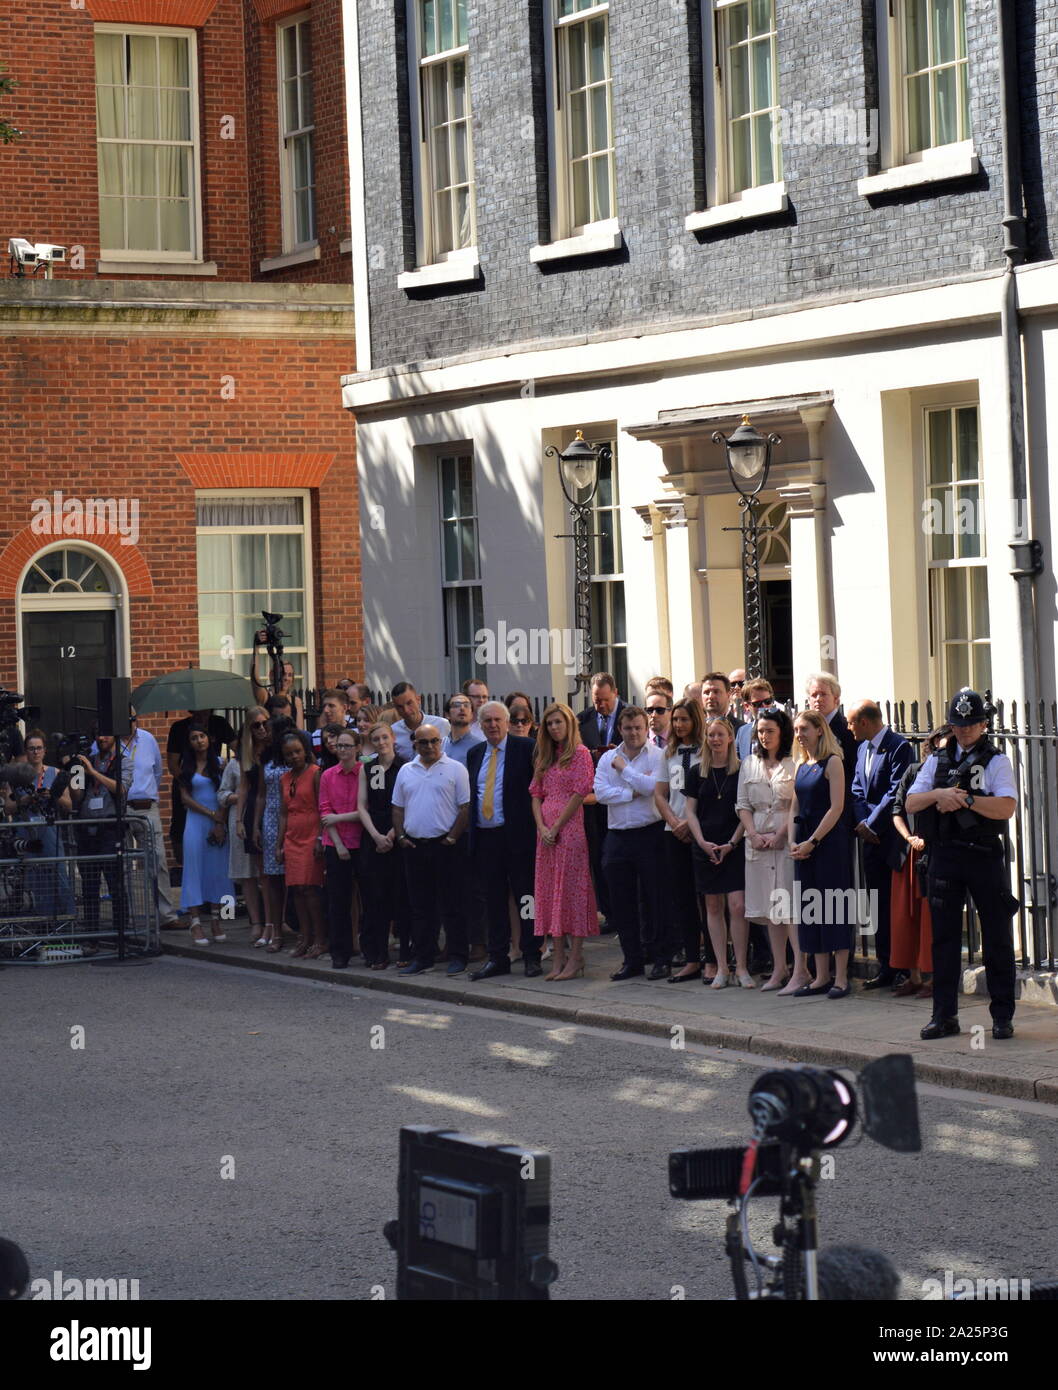 Boris Johnson, l'amie de carrie symonds(robe rose, au centre), avec 10 membres du personnel du numéro entrant, en attendant l'arrivée de Boris Johnson après sa nomination comme premier ministre britannique le 24 juillet 2019. Banque D'Images